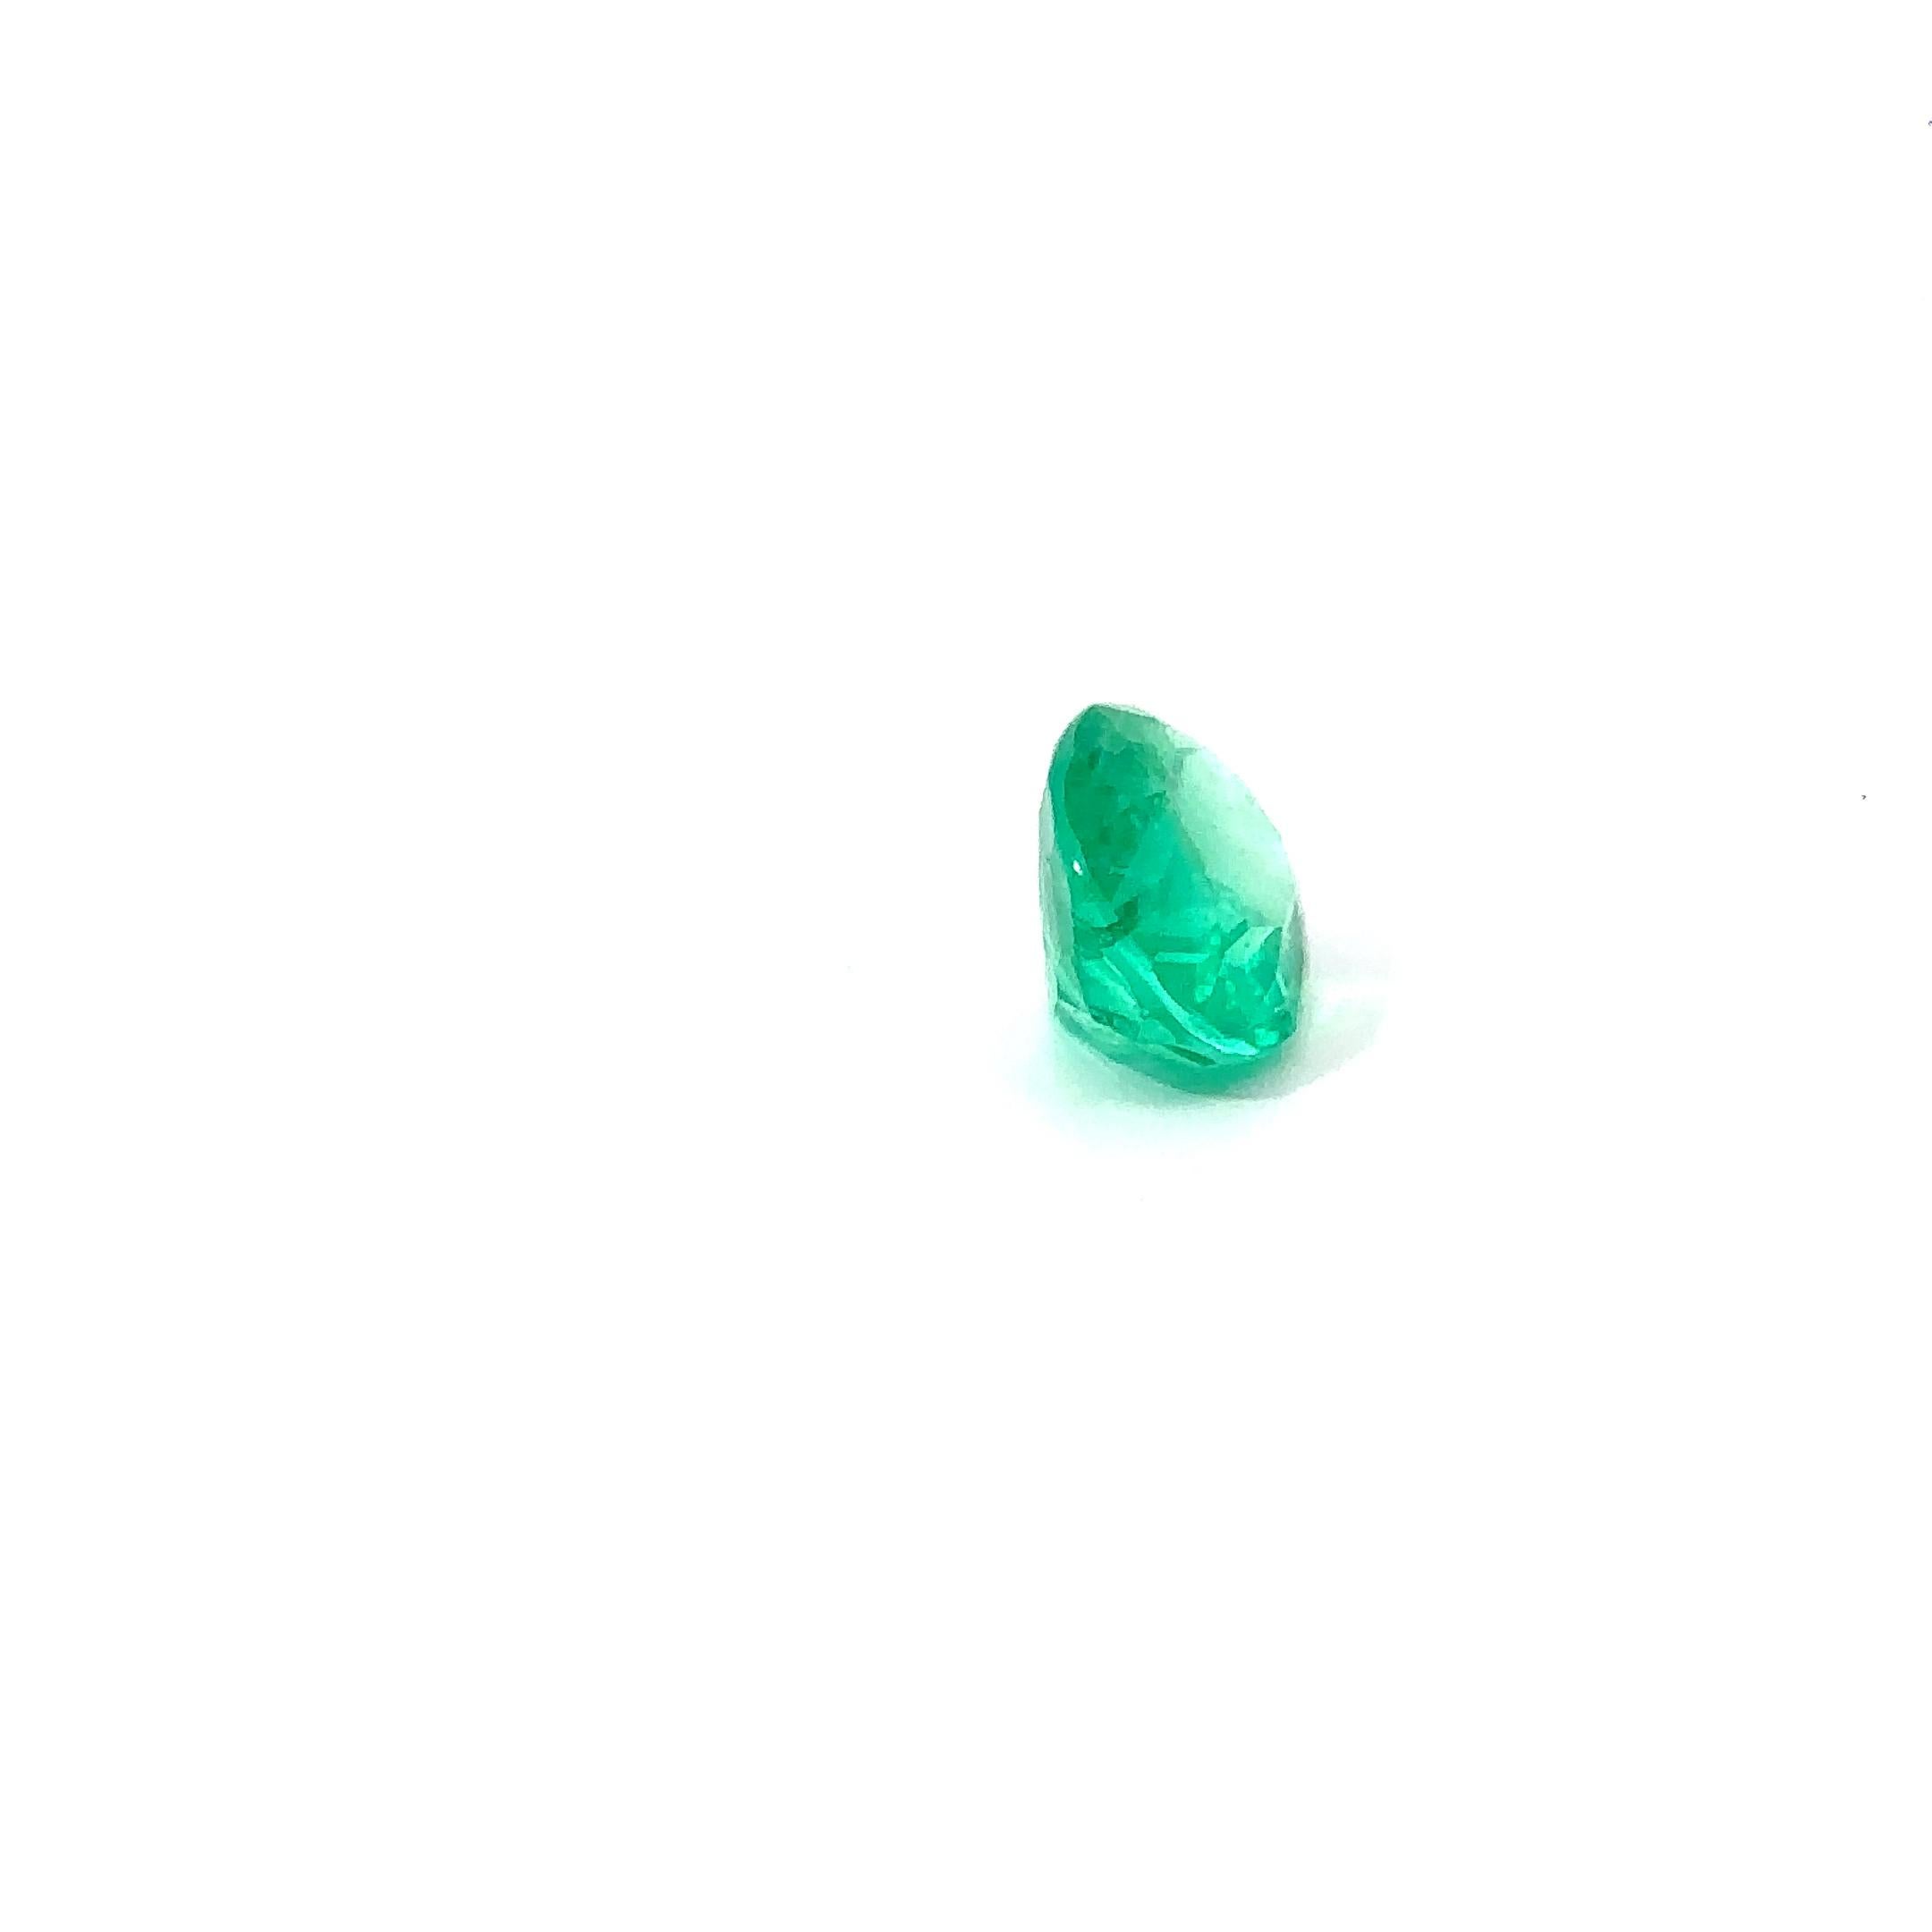 Natürlicher Smaragd 
Lebendiges Grün 
Oval/Mod. Brillant-Schliff
Hinweise auf eine geringfügige Verbesserung der Klarheit
Herkunft aus Kolumbien.